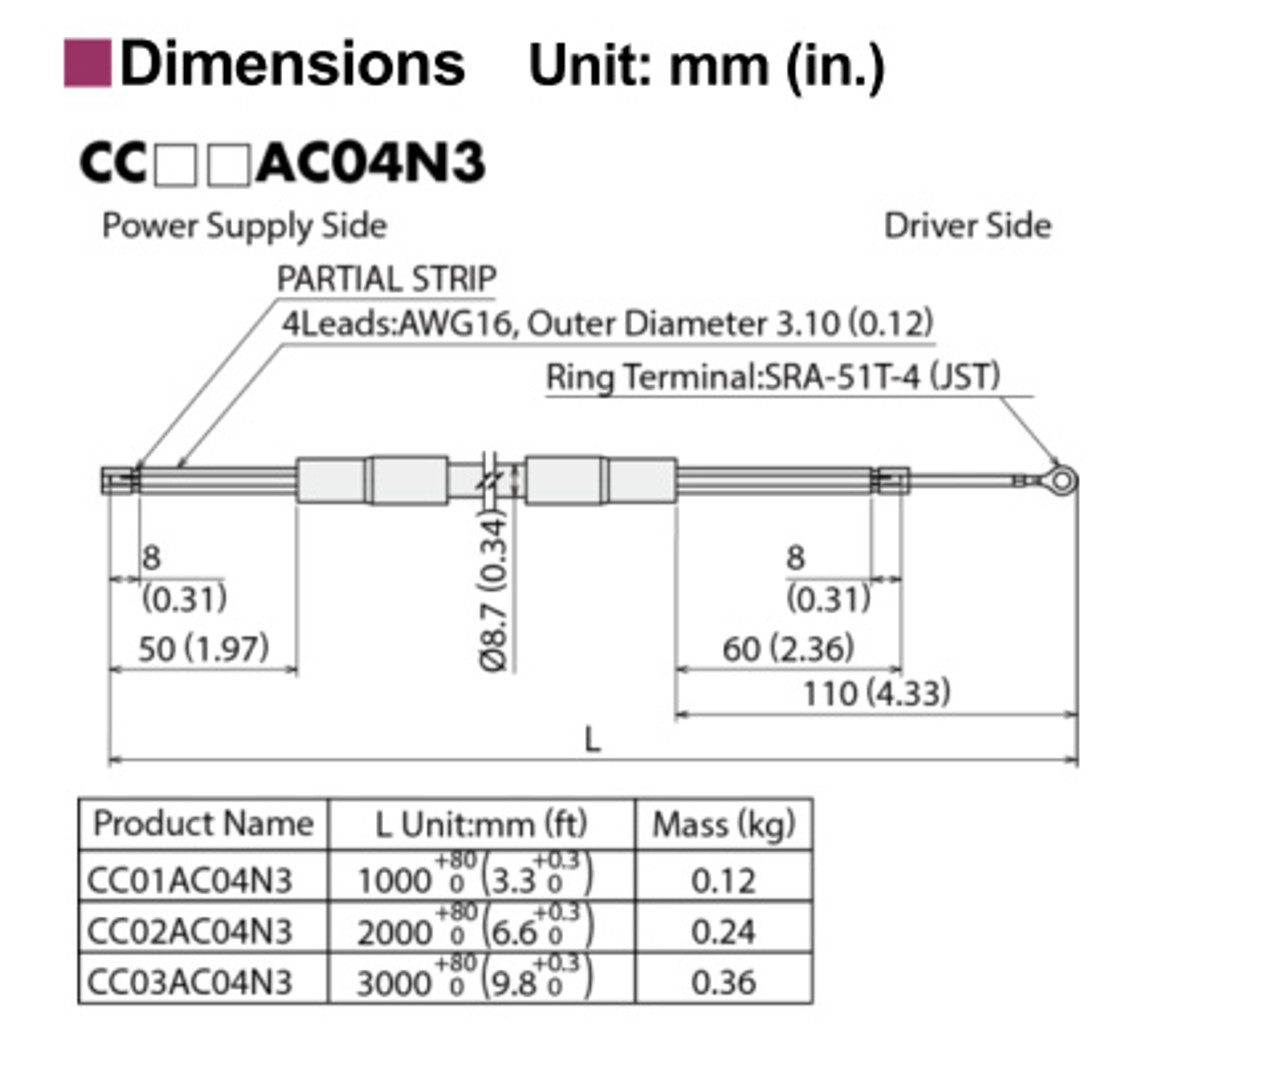 CC03AC04N3 - Dimensions